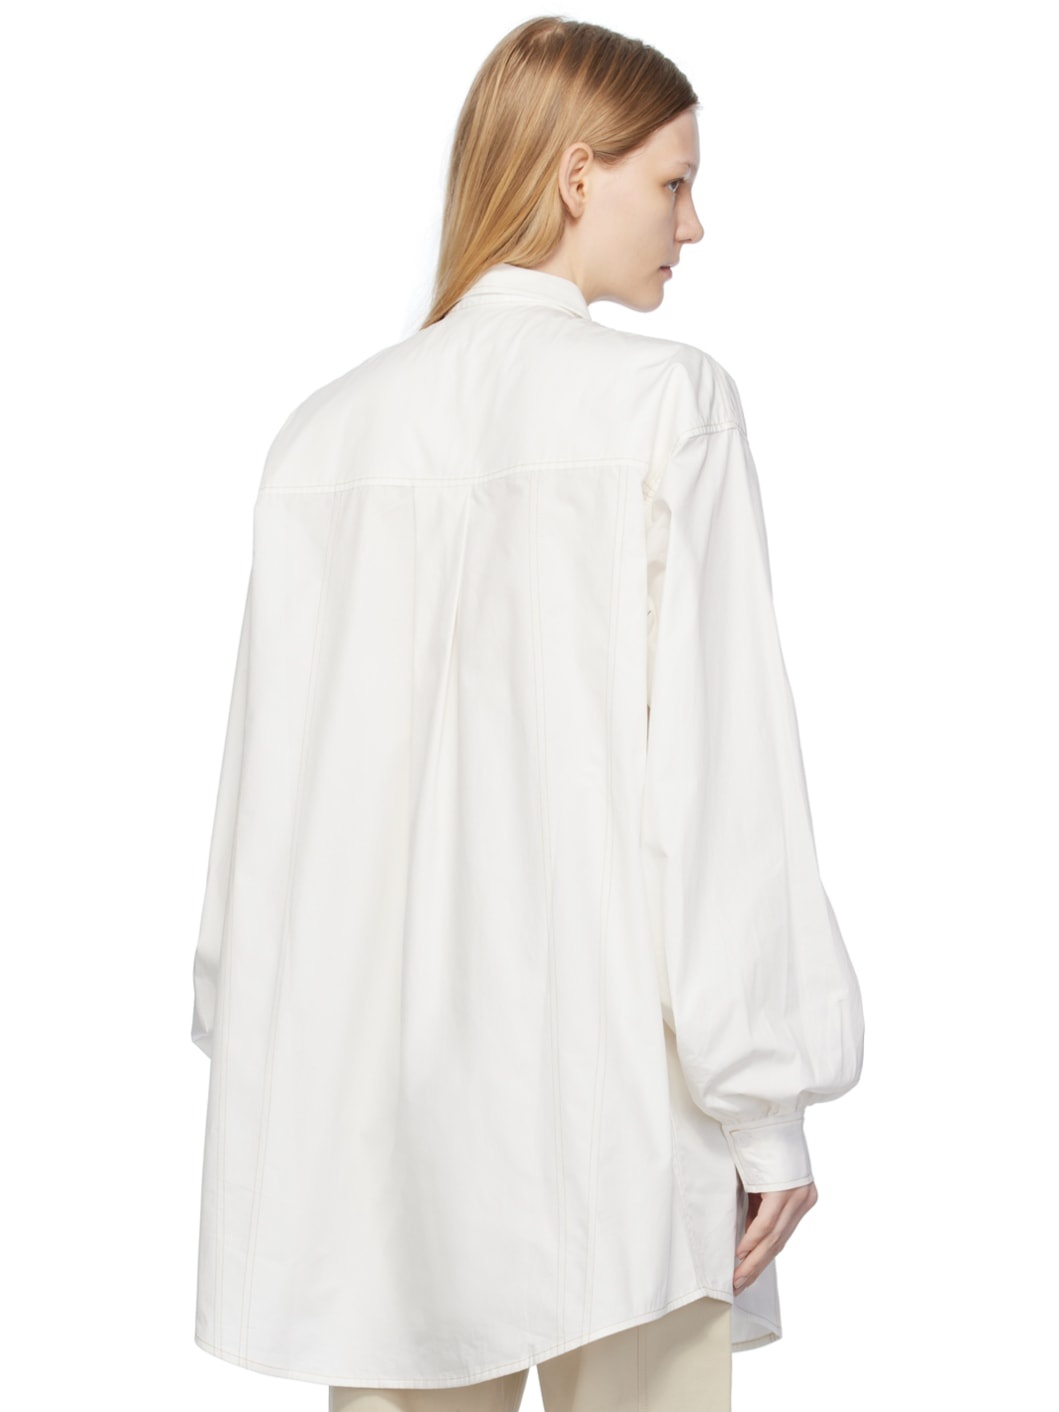 White Oversized Shirt - 3